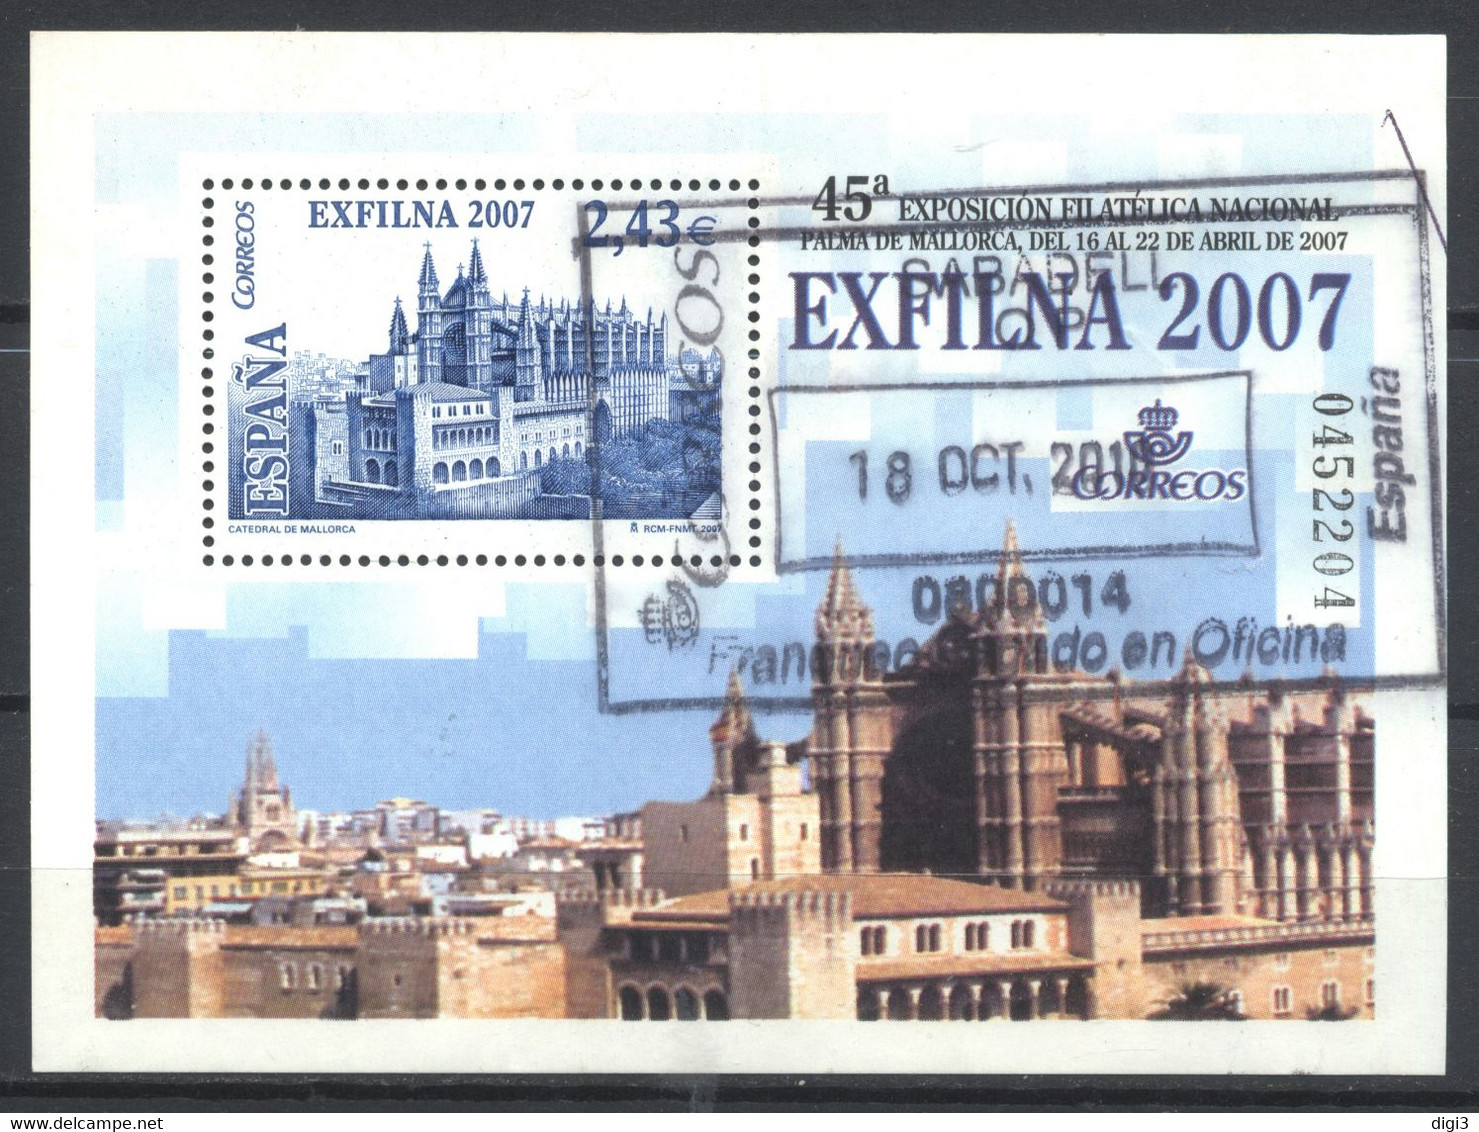 España, 2007, EXFILNA 2007, Catedral De Palma De Mallorca, Hojita, 2,43 Eur, Usada - Souvenirbögen